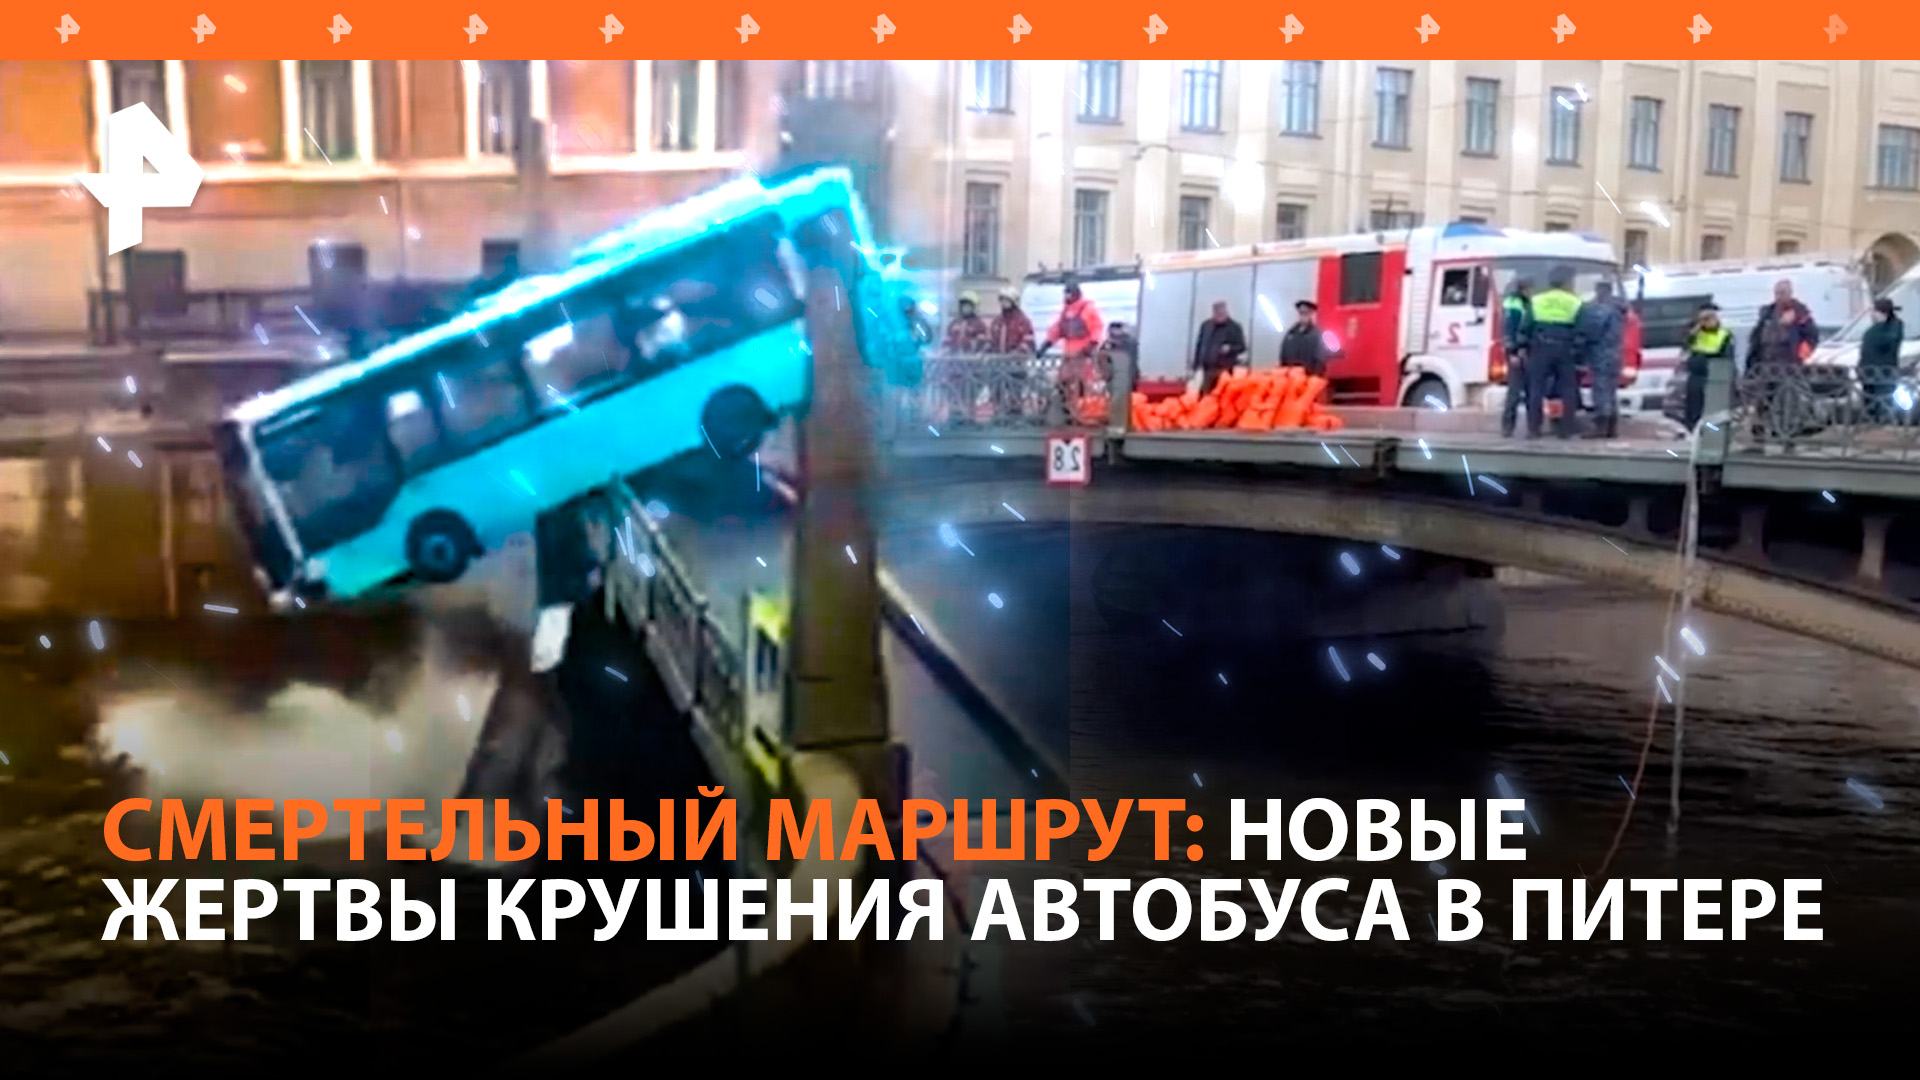 Четыре человека погибли в Питере после падения автобуса в реку / РЕН Новости